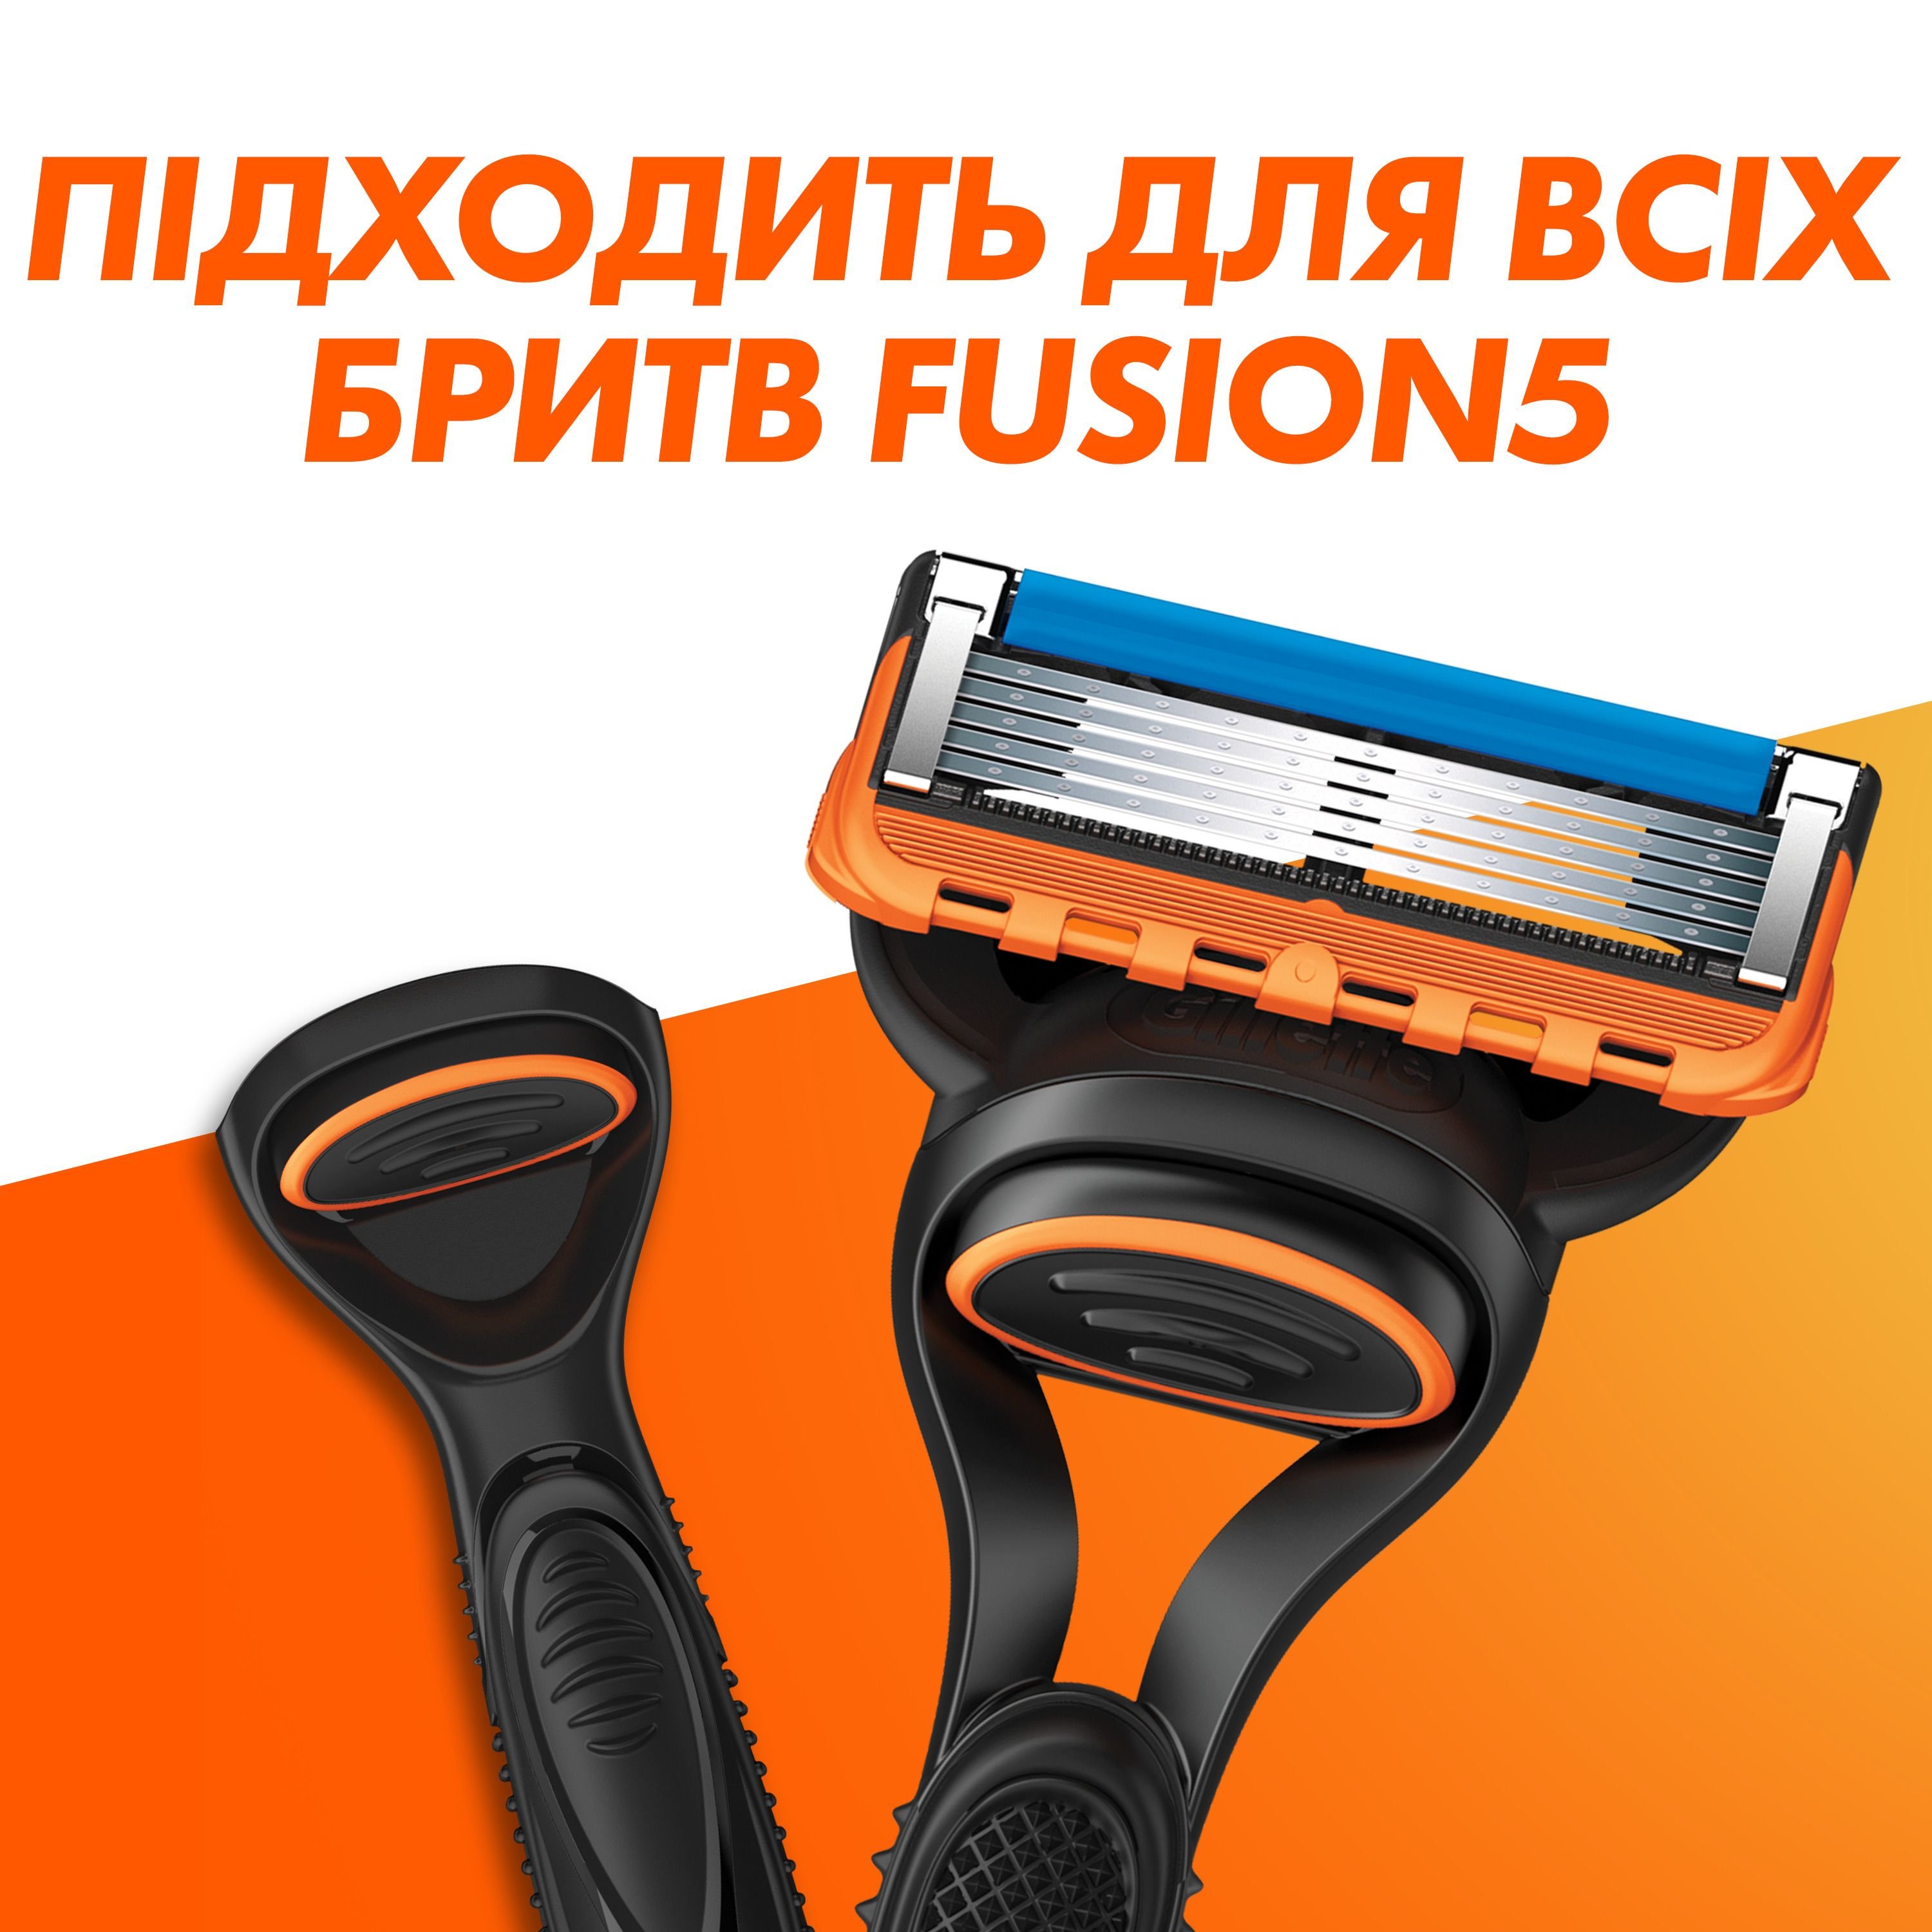 Сменные картриджи для бритья Gillette Fusion5 8 шт. - фото 5